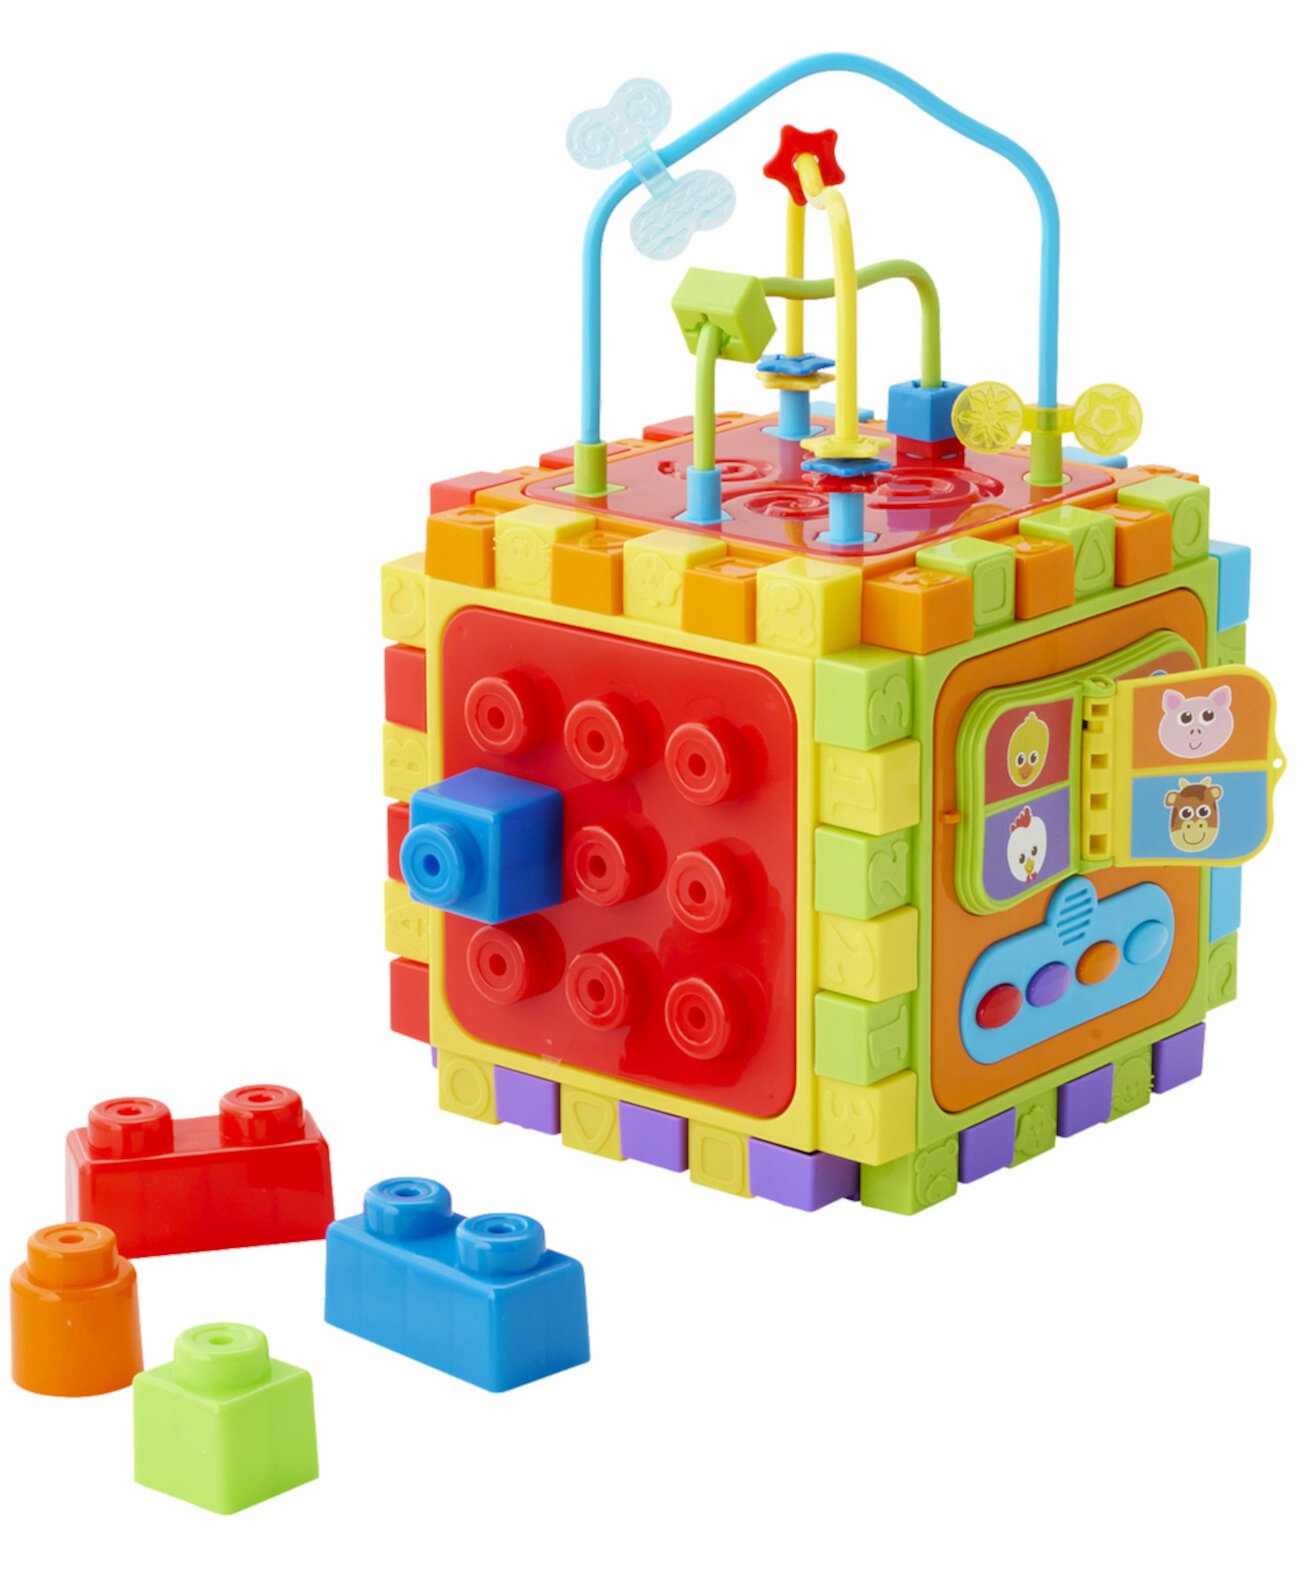 Кубик активности с 6 направлениями, созданный для вас компанией Toys R Us Imaginarium